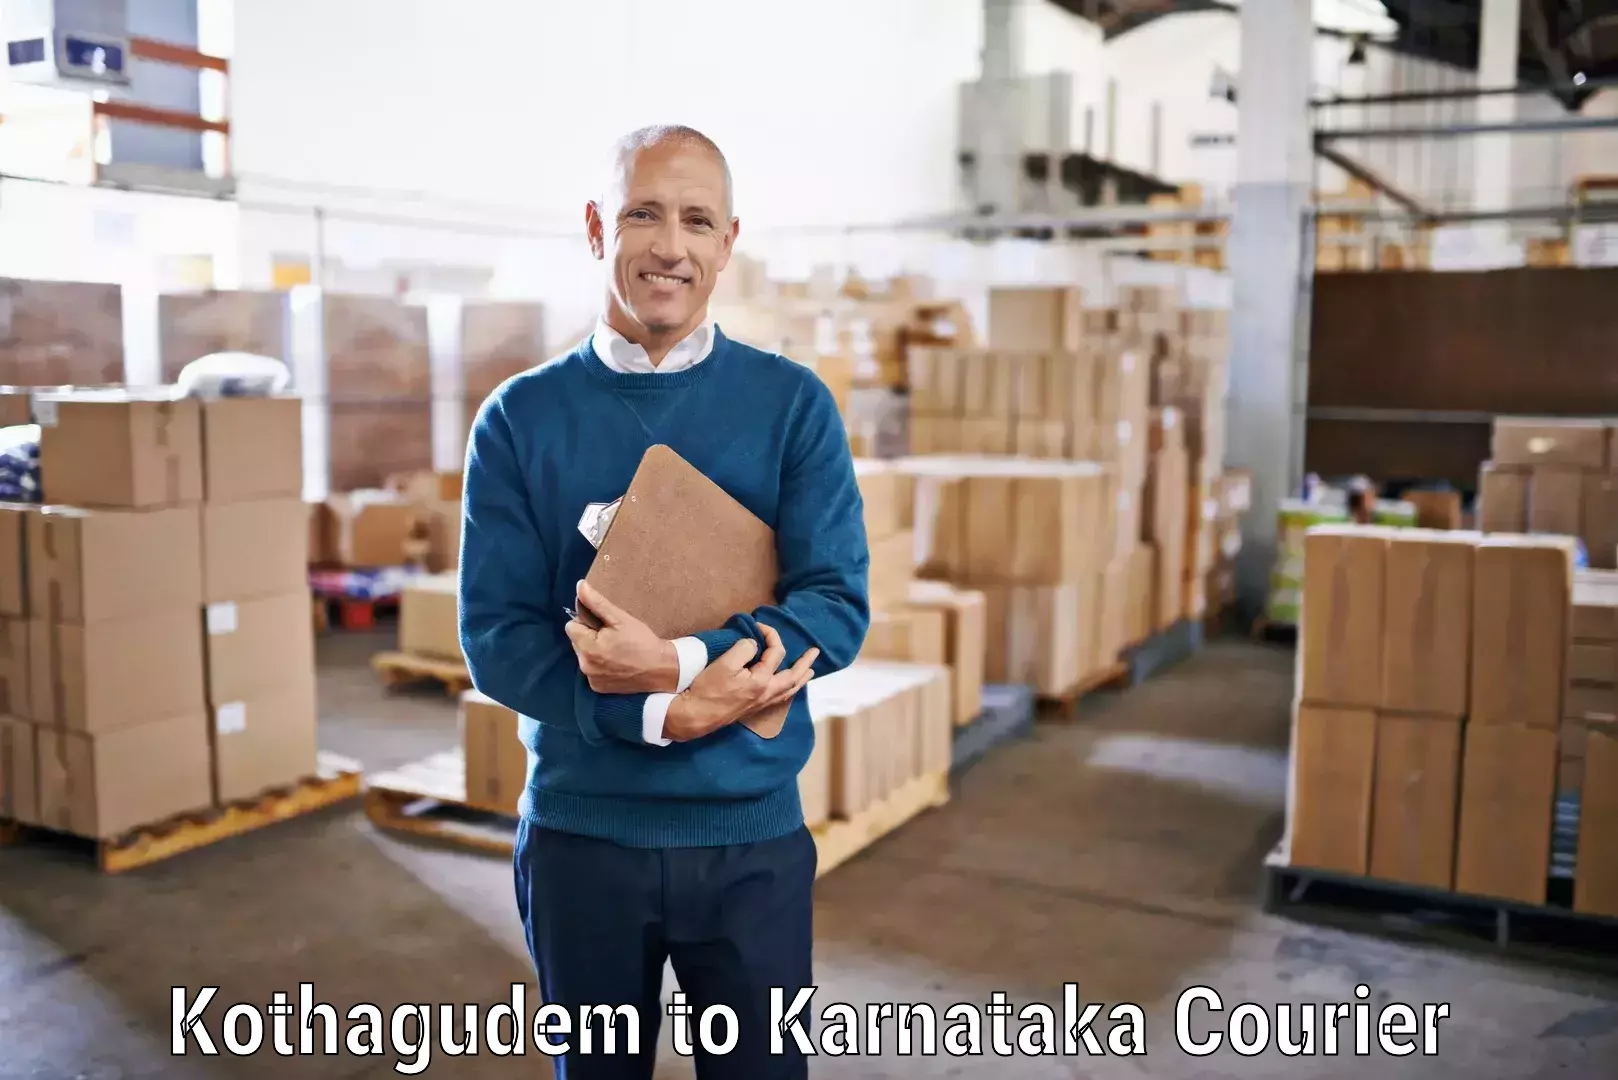 Nationwide courier service Kothagudem to Nelamangala